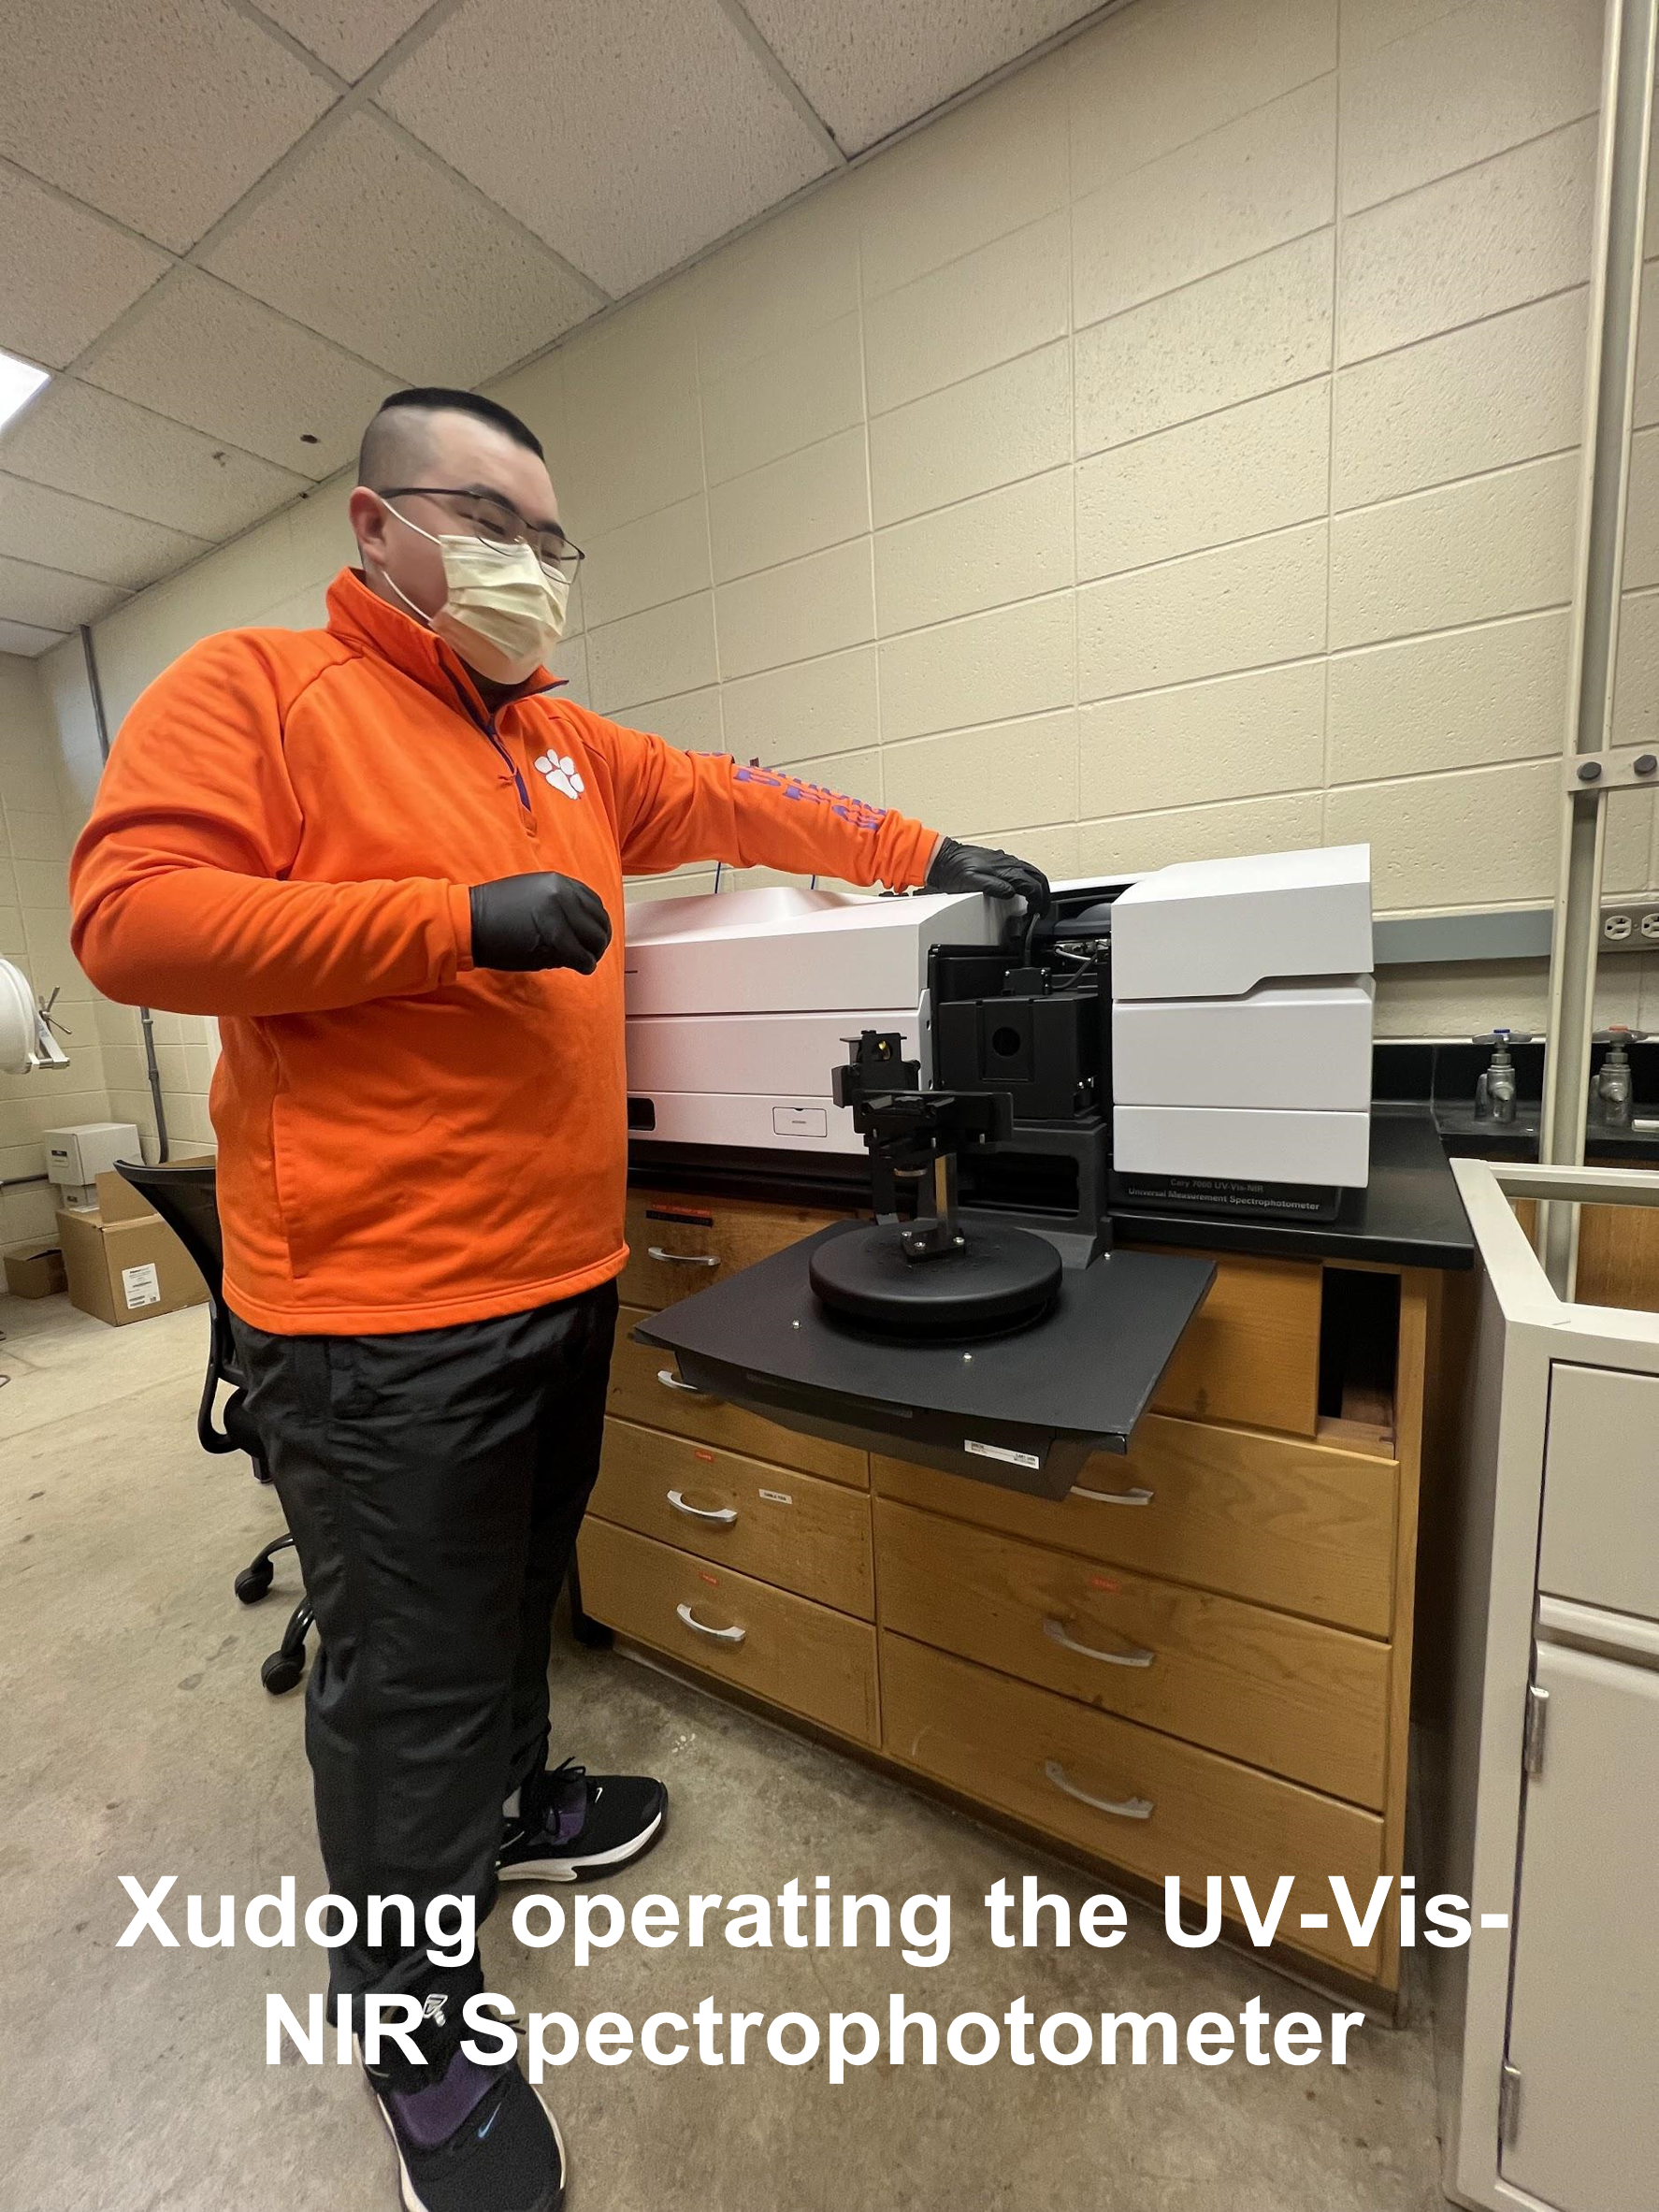  Xudong performing UV